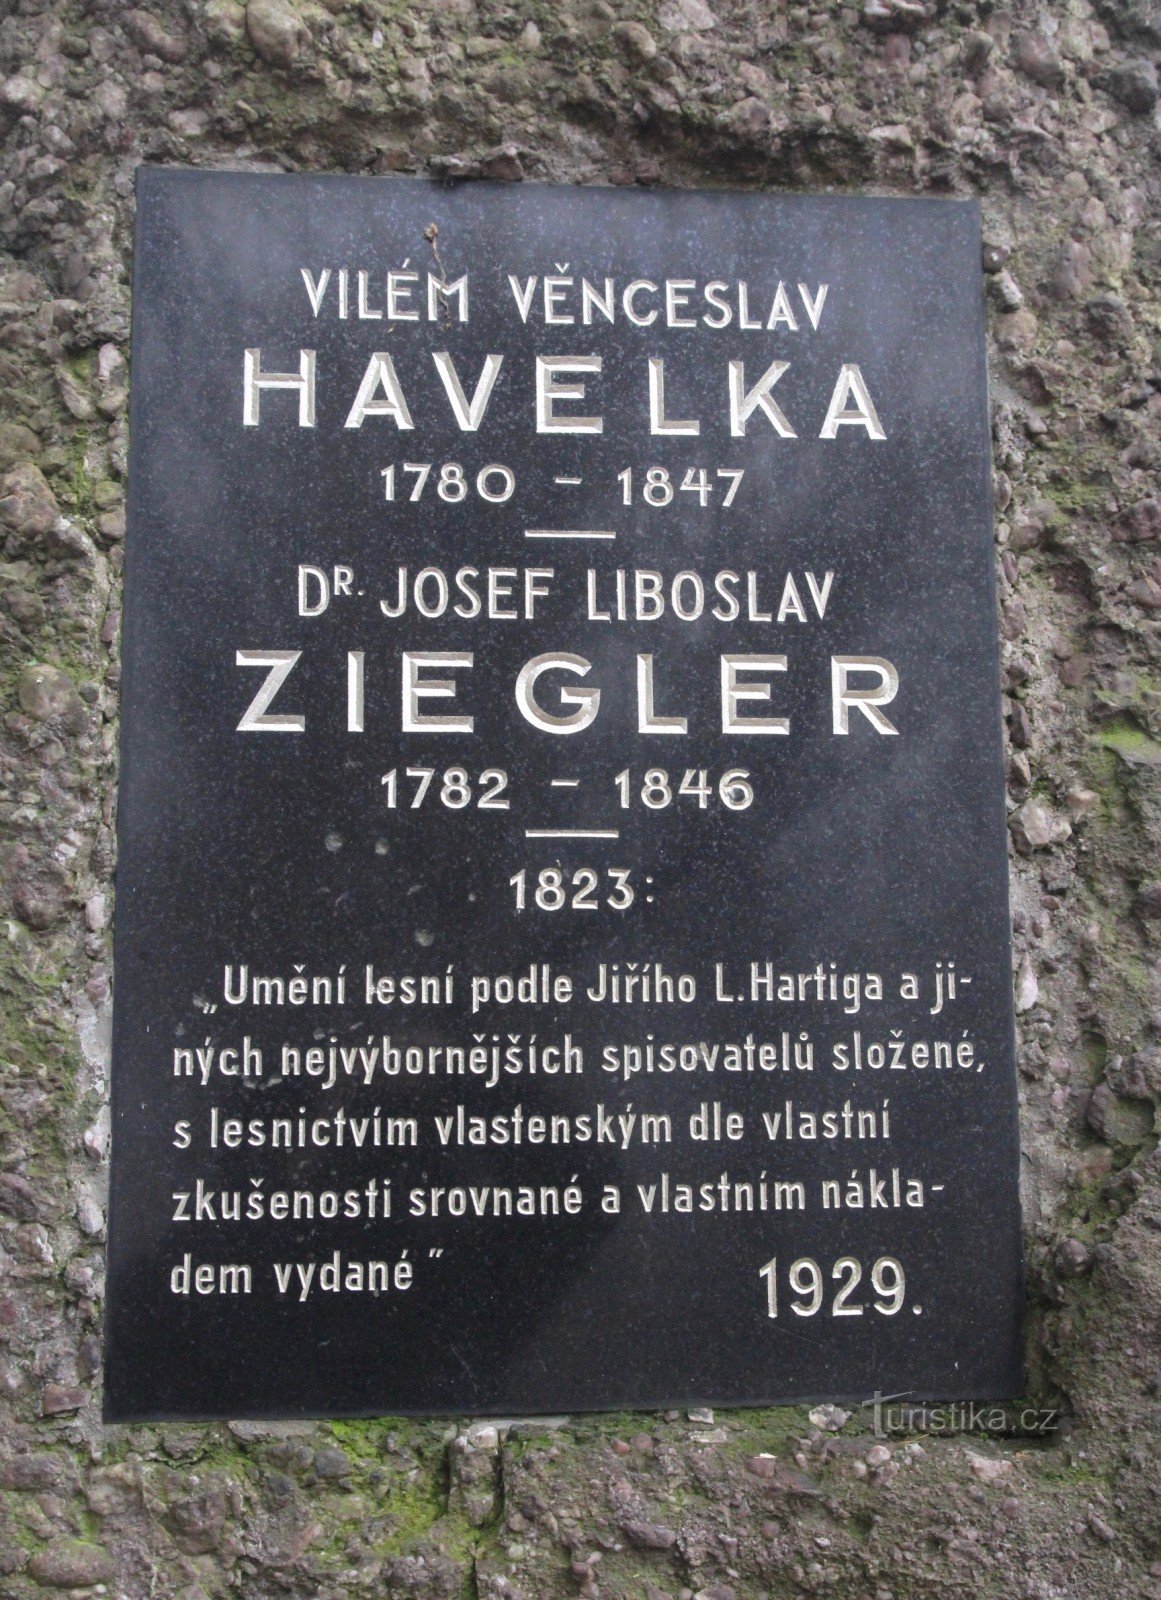 Pomnik VV Havelki i JL Zieglera